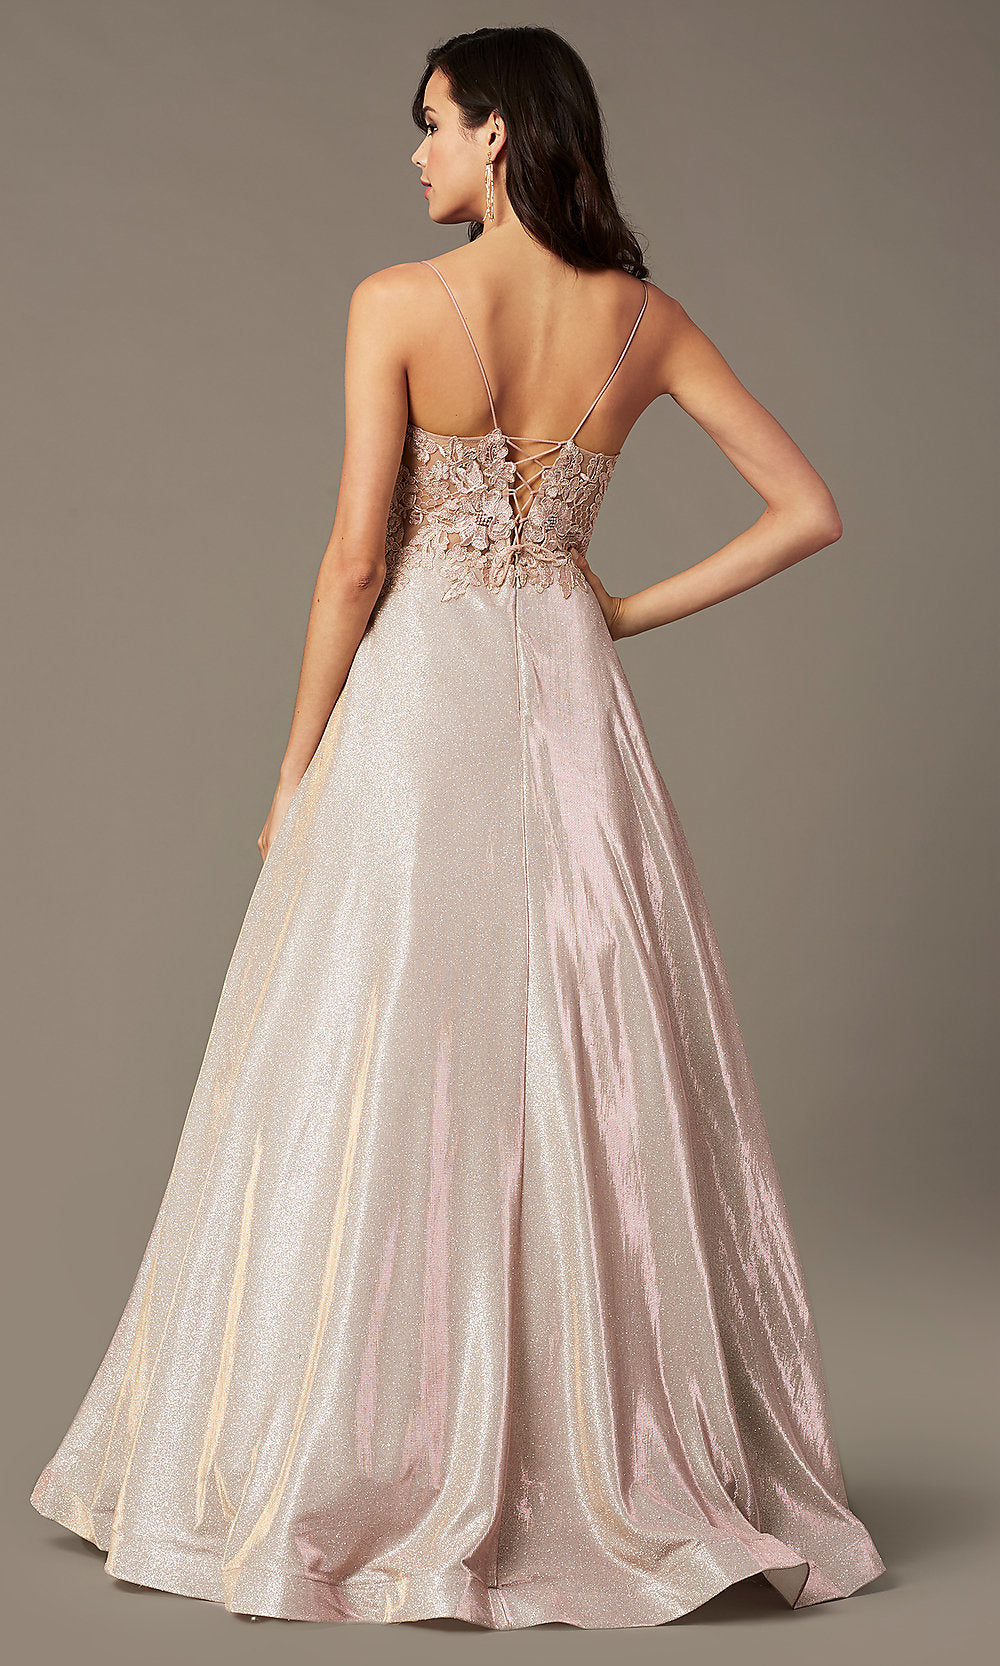  Glitter-Knit Lace-Bodice Prom Dress by PromGirl